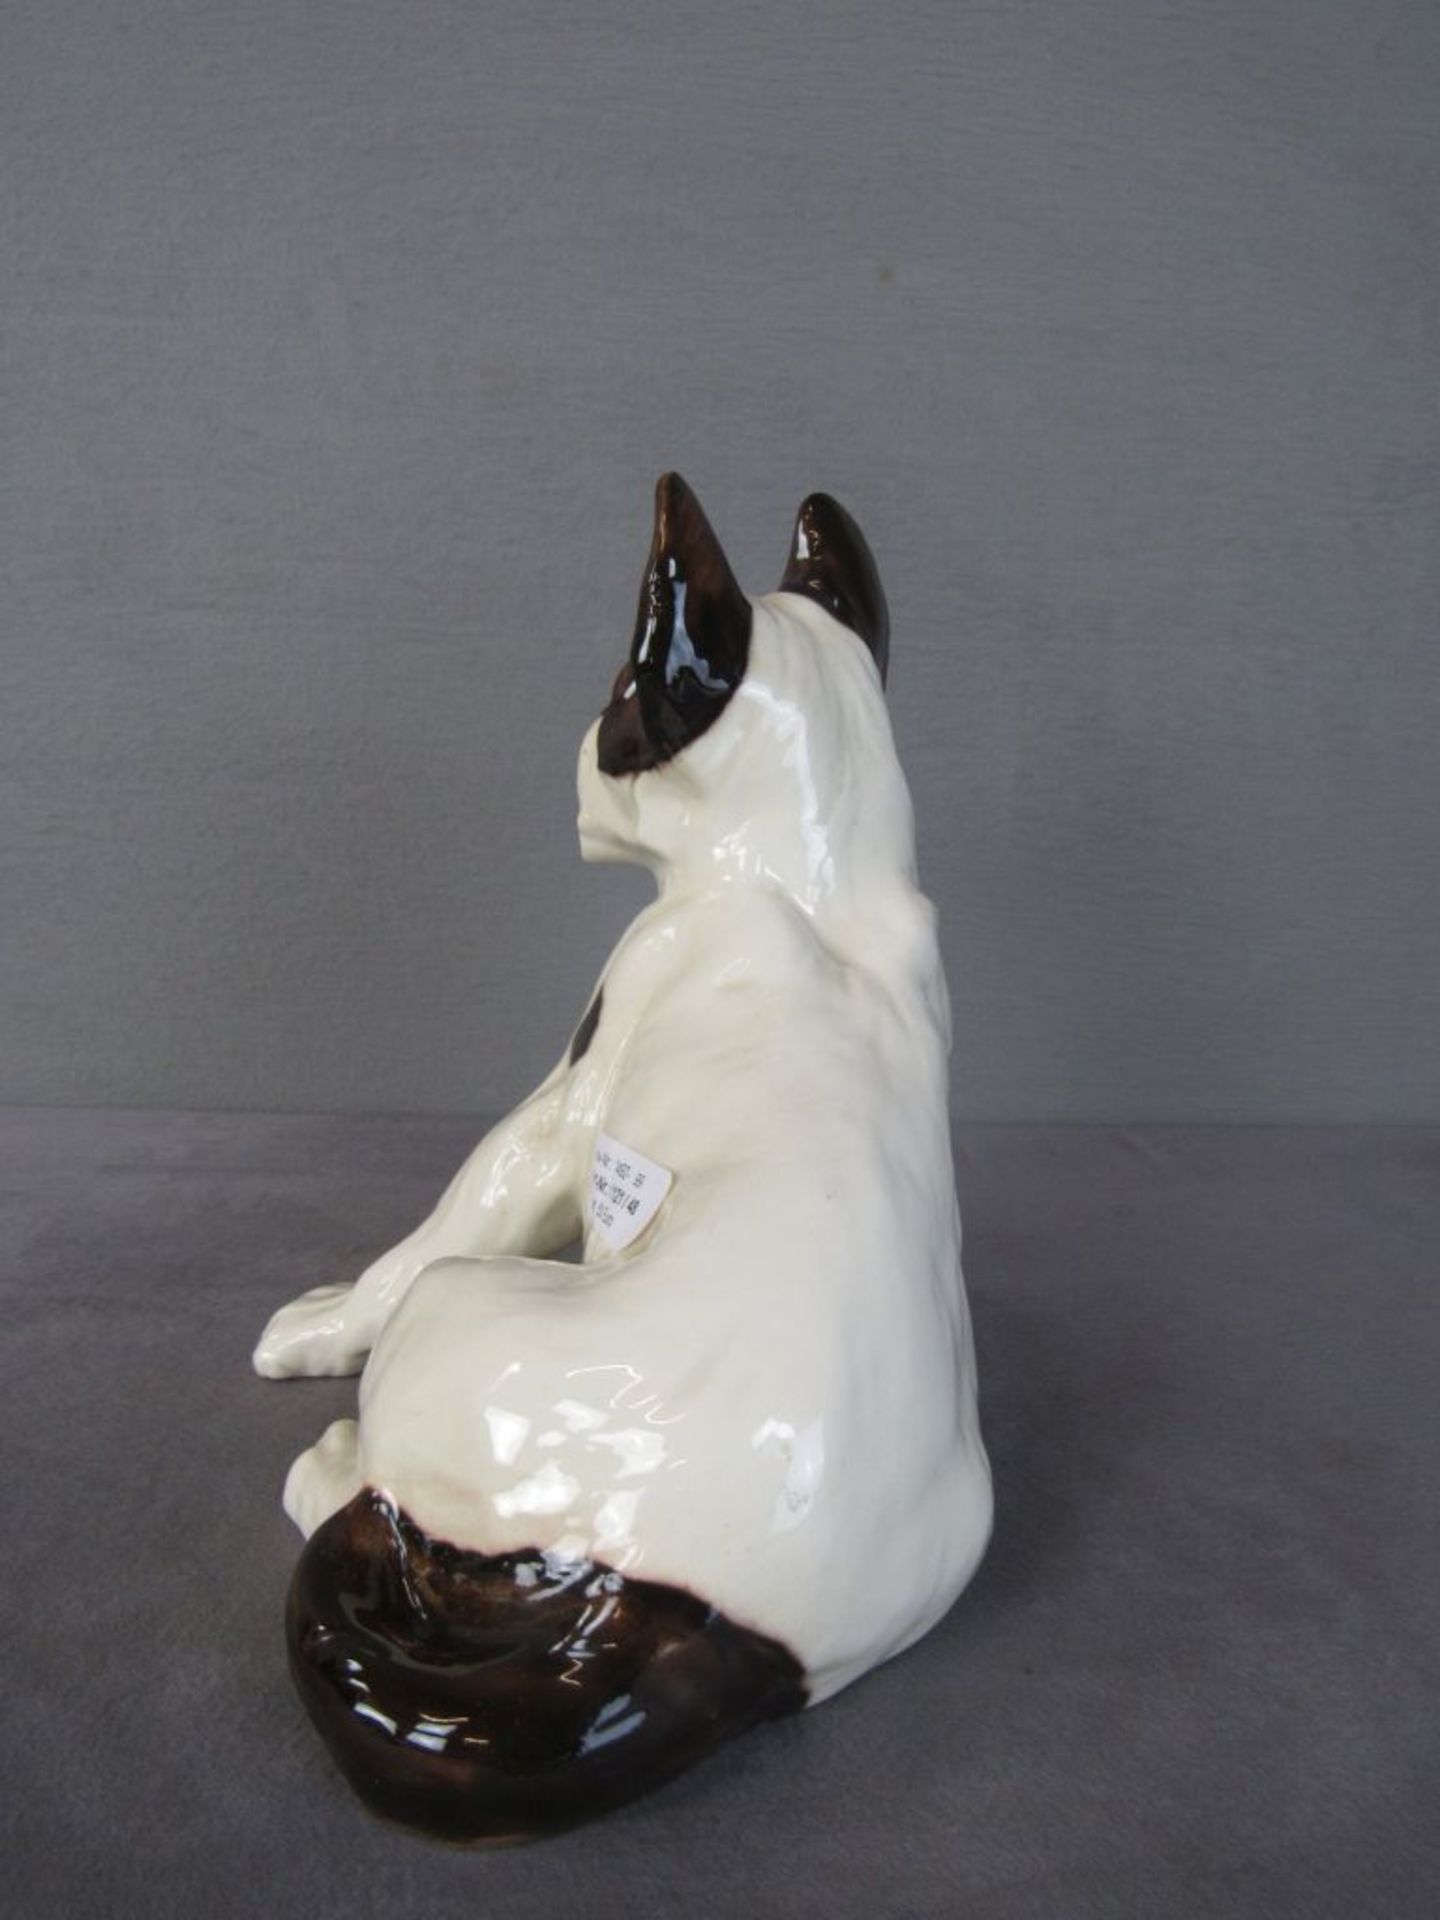 Porzellanfigur Hund Mops weiß braun 24cm hoch unterseits nummeriert geschätzt um 1920 - Bild 3 aus 6